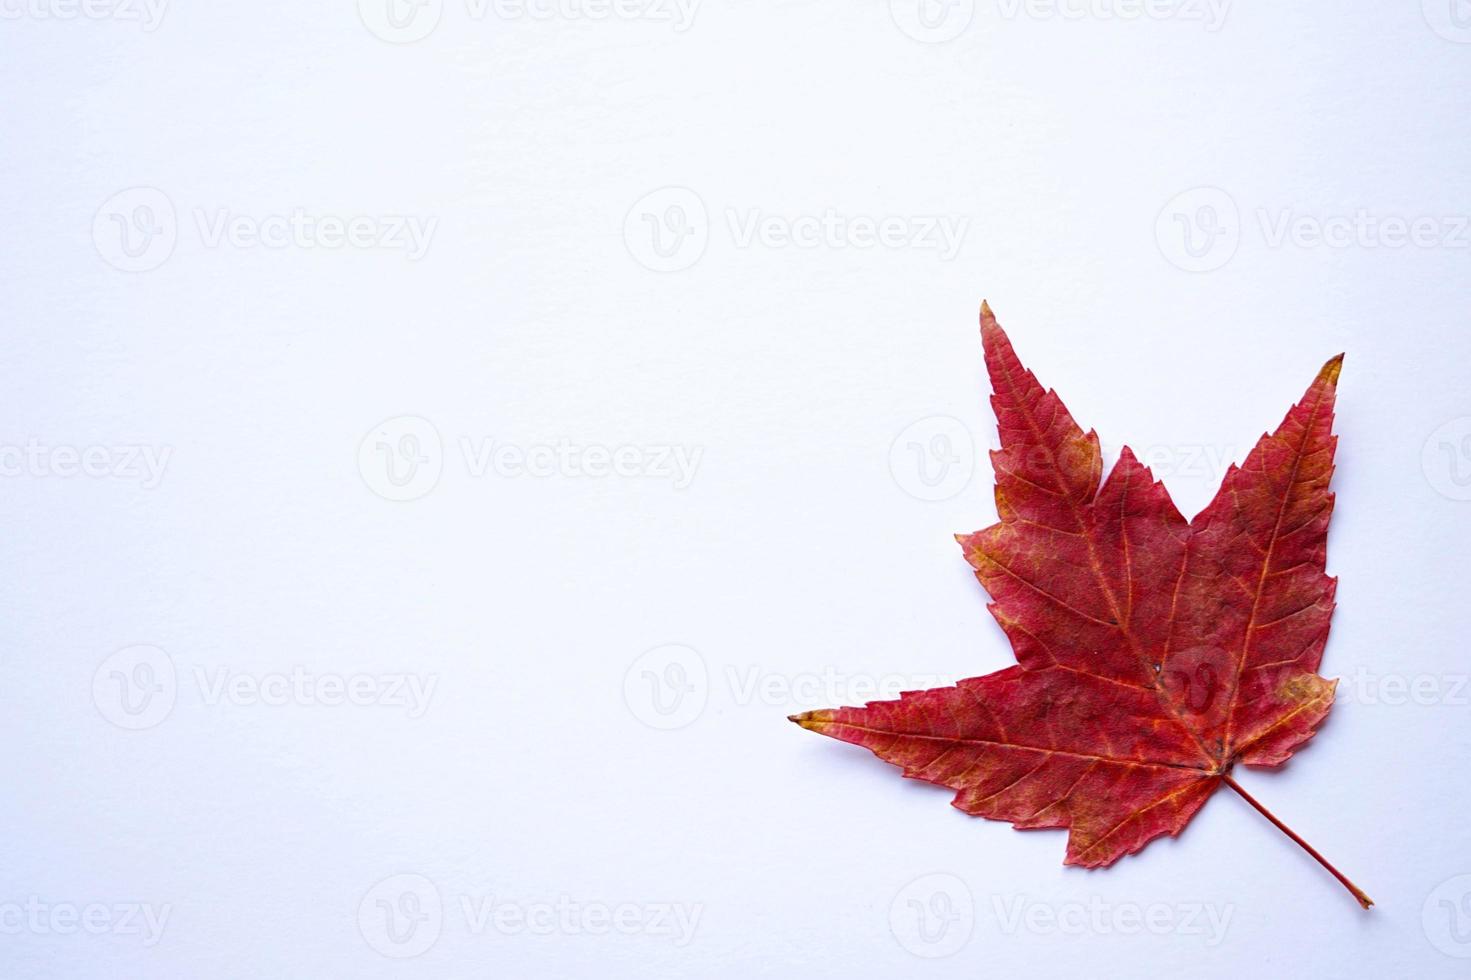 feuilles d'érable rouge sur fond blanc photo